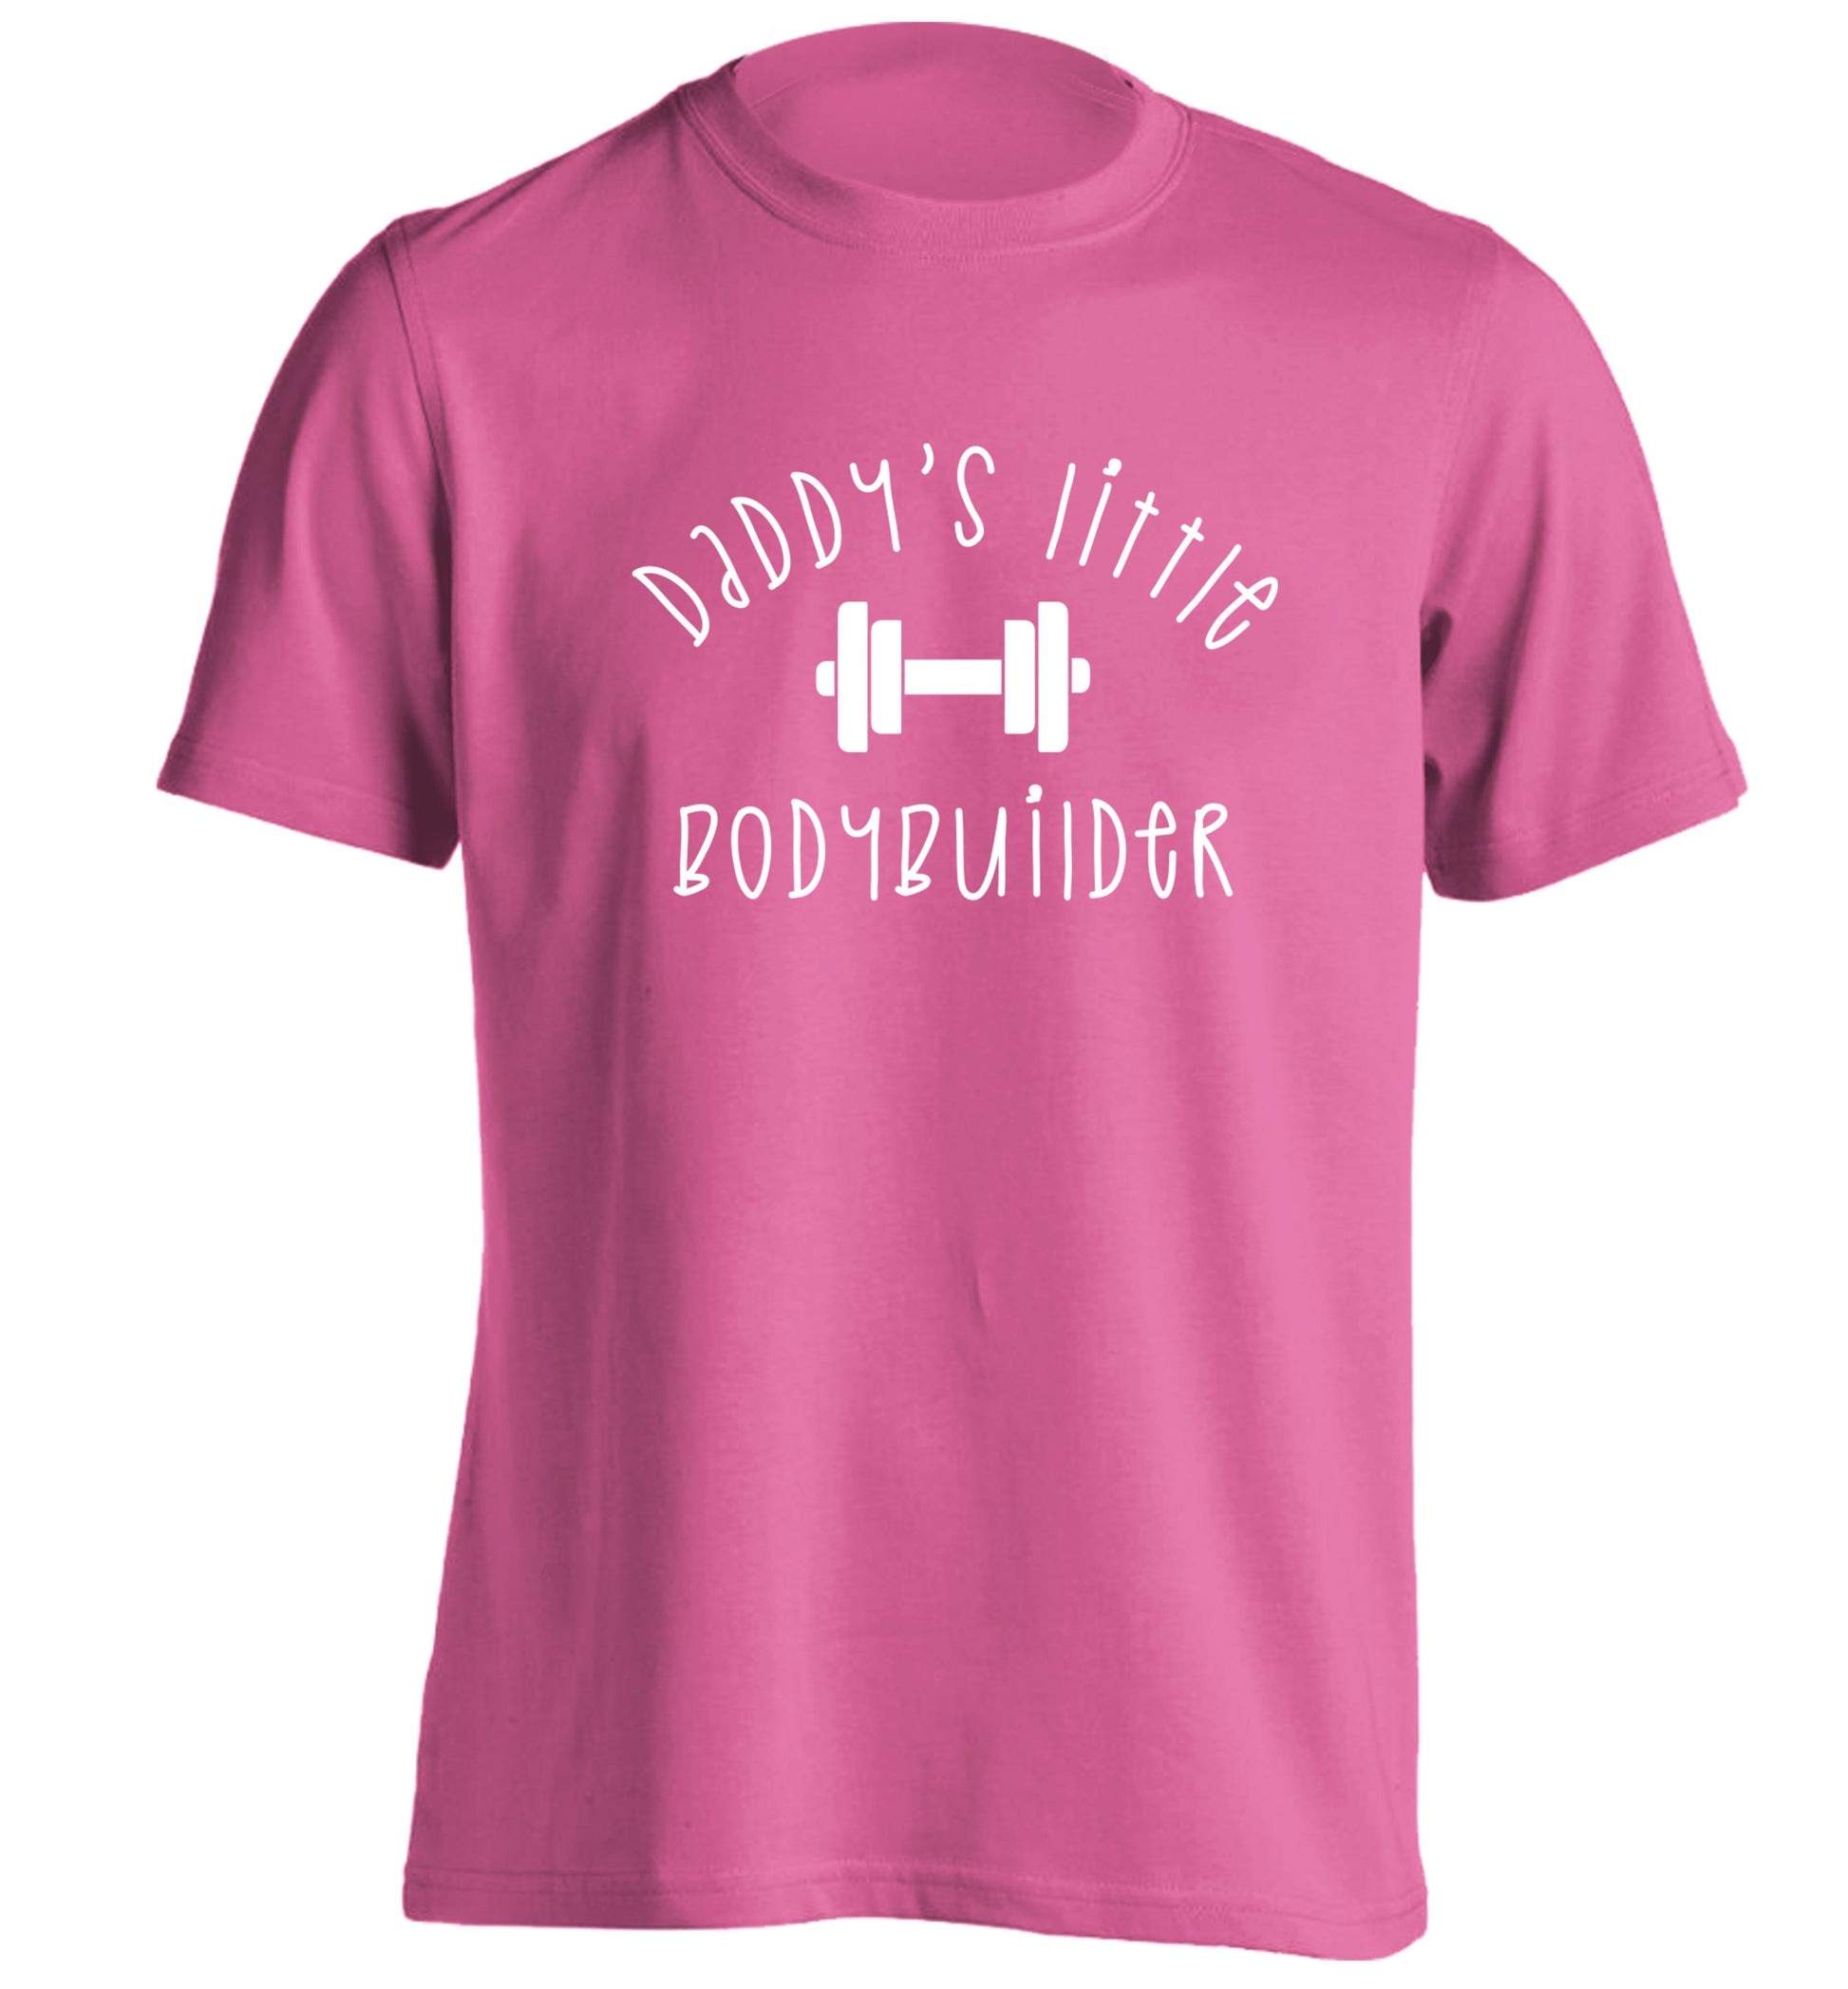 Daddy's little bodybuilder adults unisex pink Tshirt 2XL